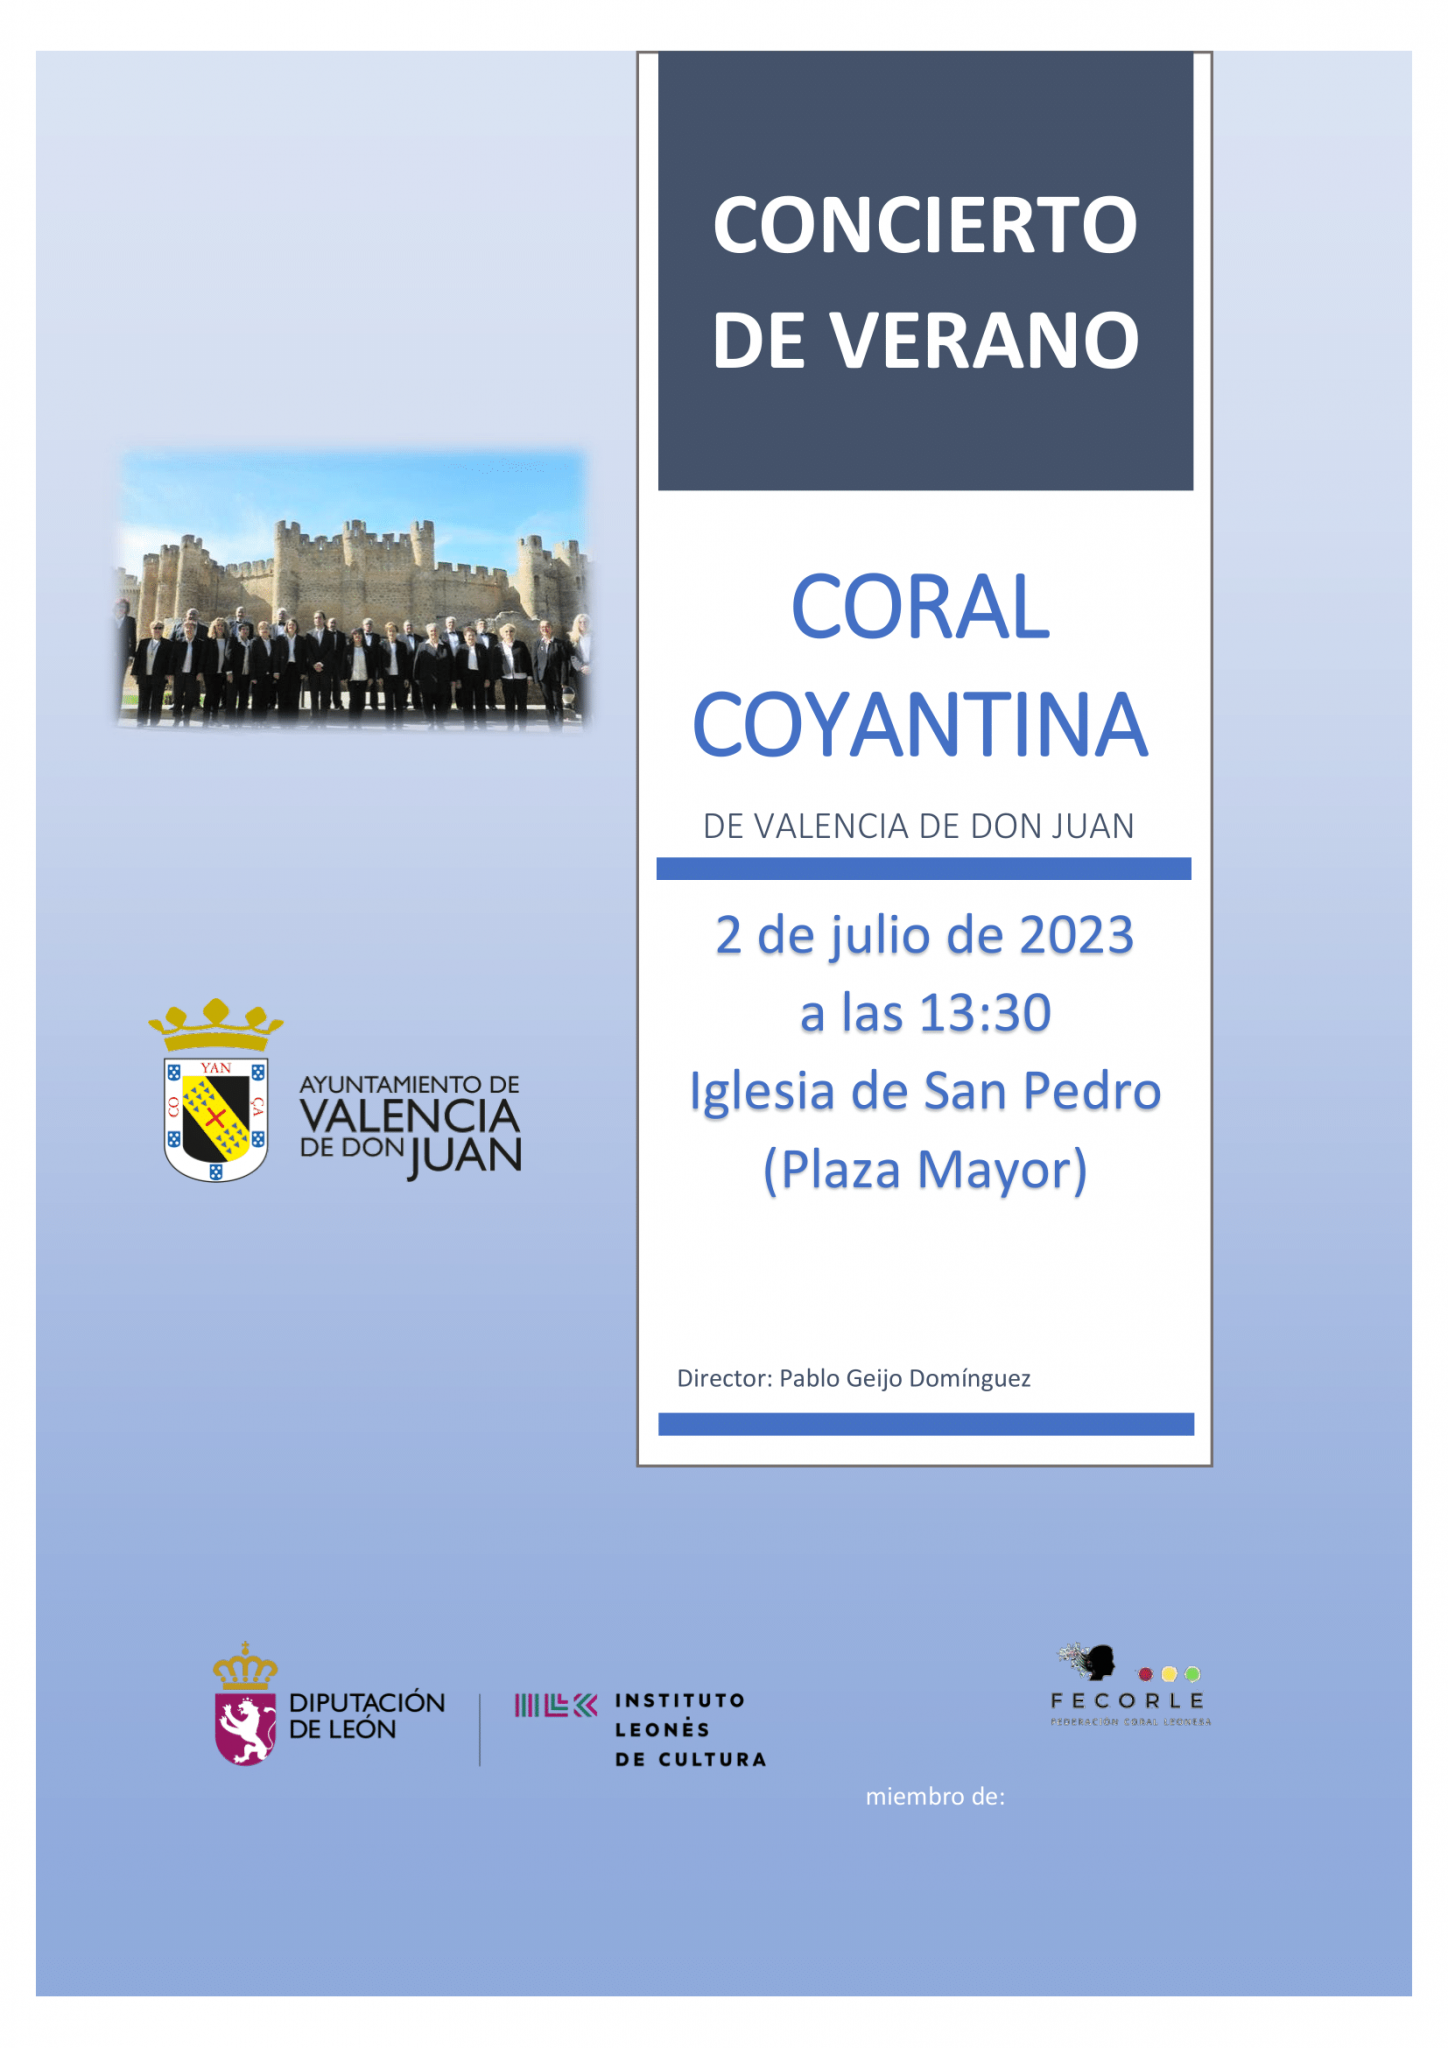 Concierto de Verano Coral Coyantina